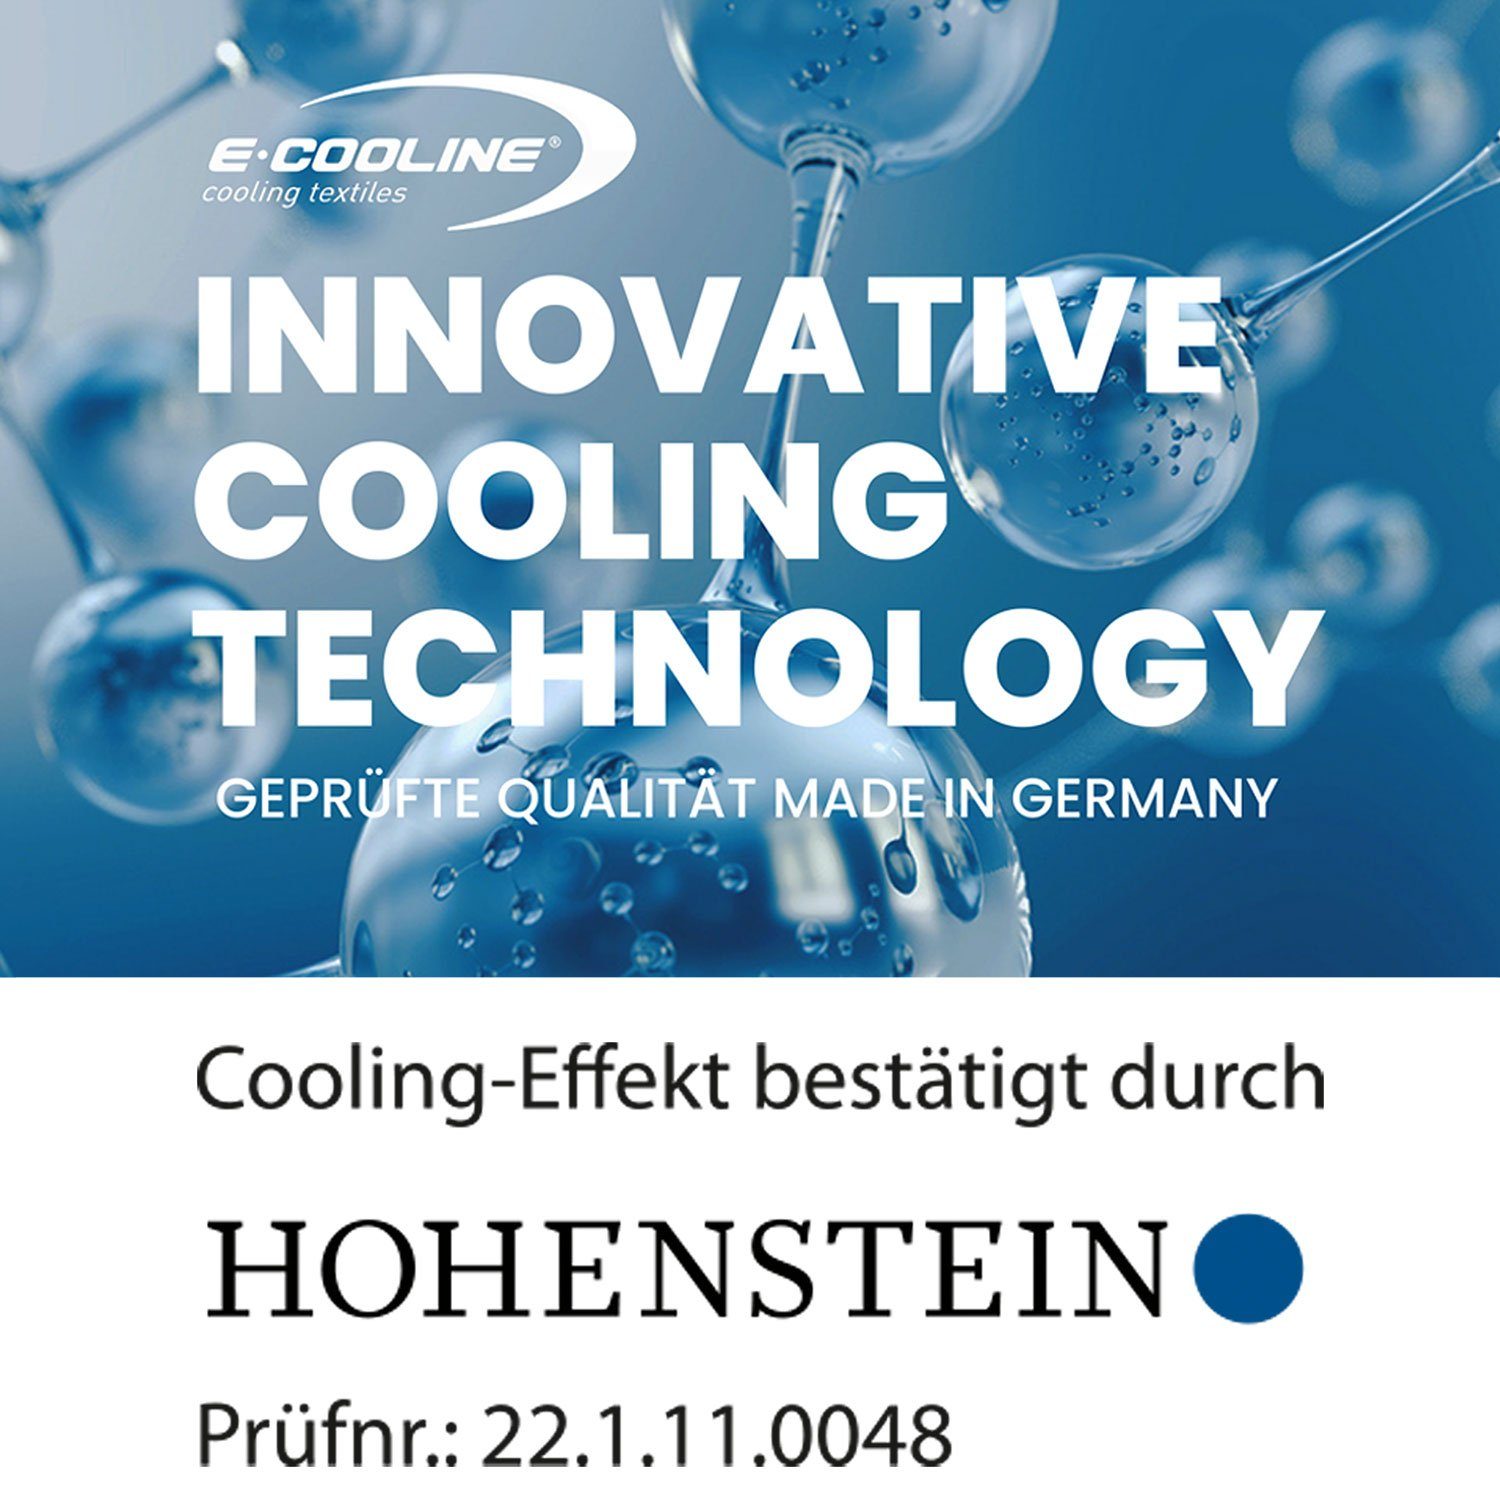 Kühlung, mit Bandana zum E.COOLINE - stundenlange - Kühlung Klimaanlage kühlend aktive Anziehen Schwarz Aktivierung Wasser, durch